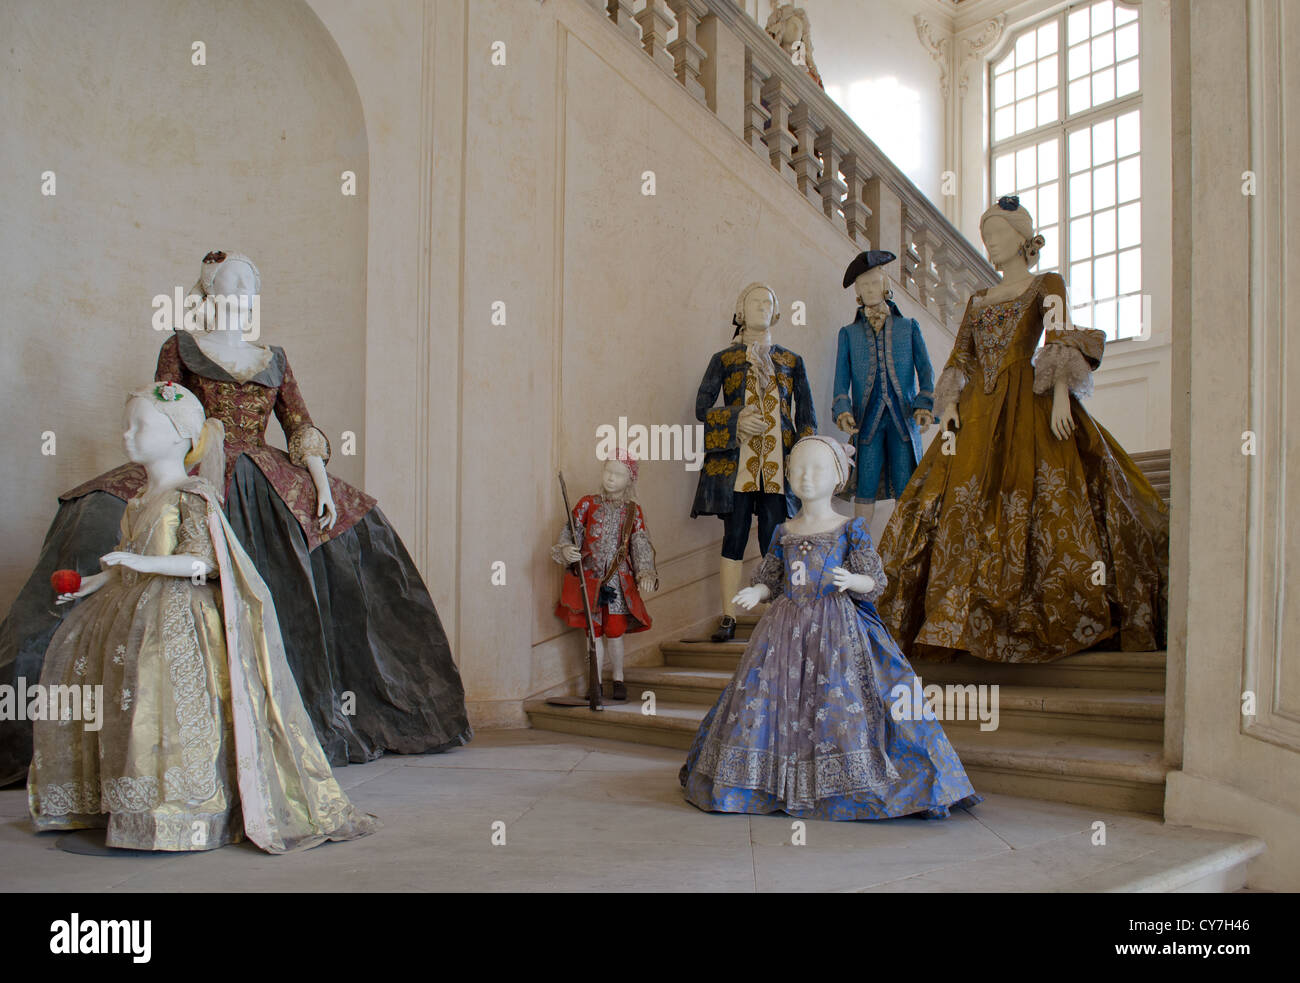 Vittoriano O Vestiti In Stile Barocco Per Gli Uomini Le Donne E I Bambini Sul Display Foto Stock Alamy